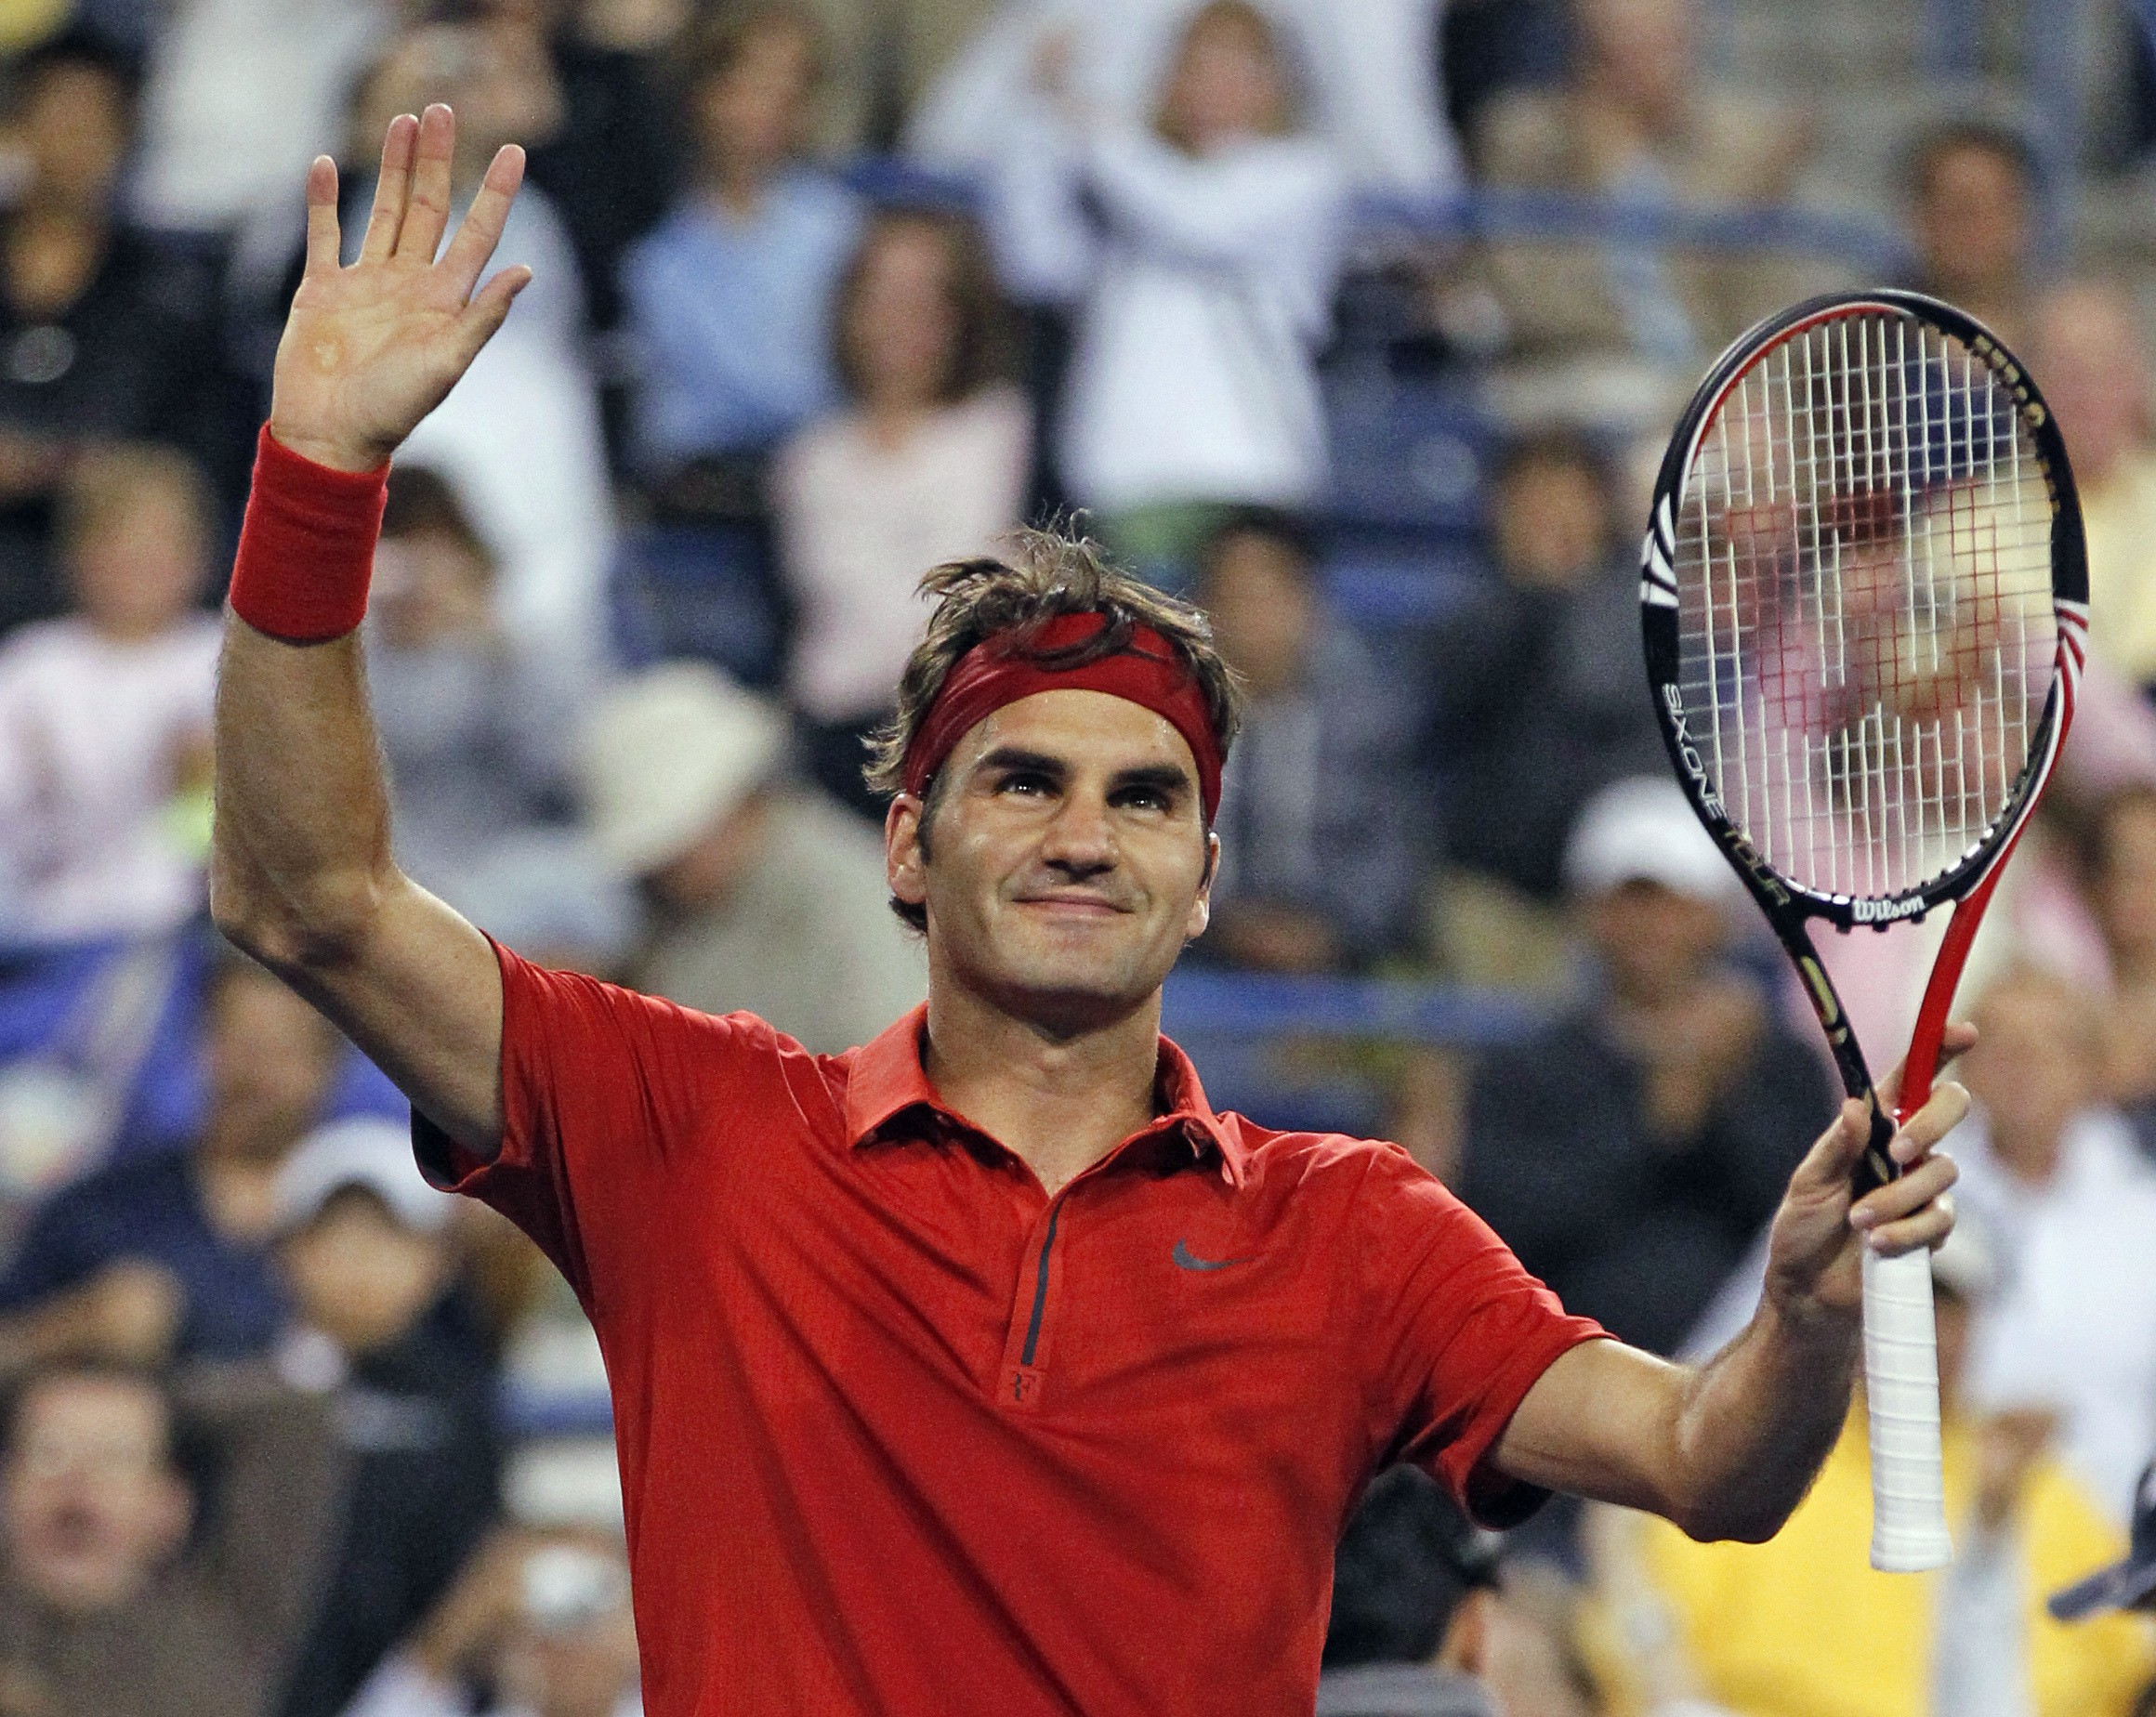 Tennis, David Nalbandian, Roger Federer